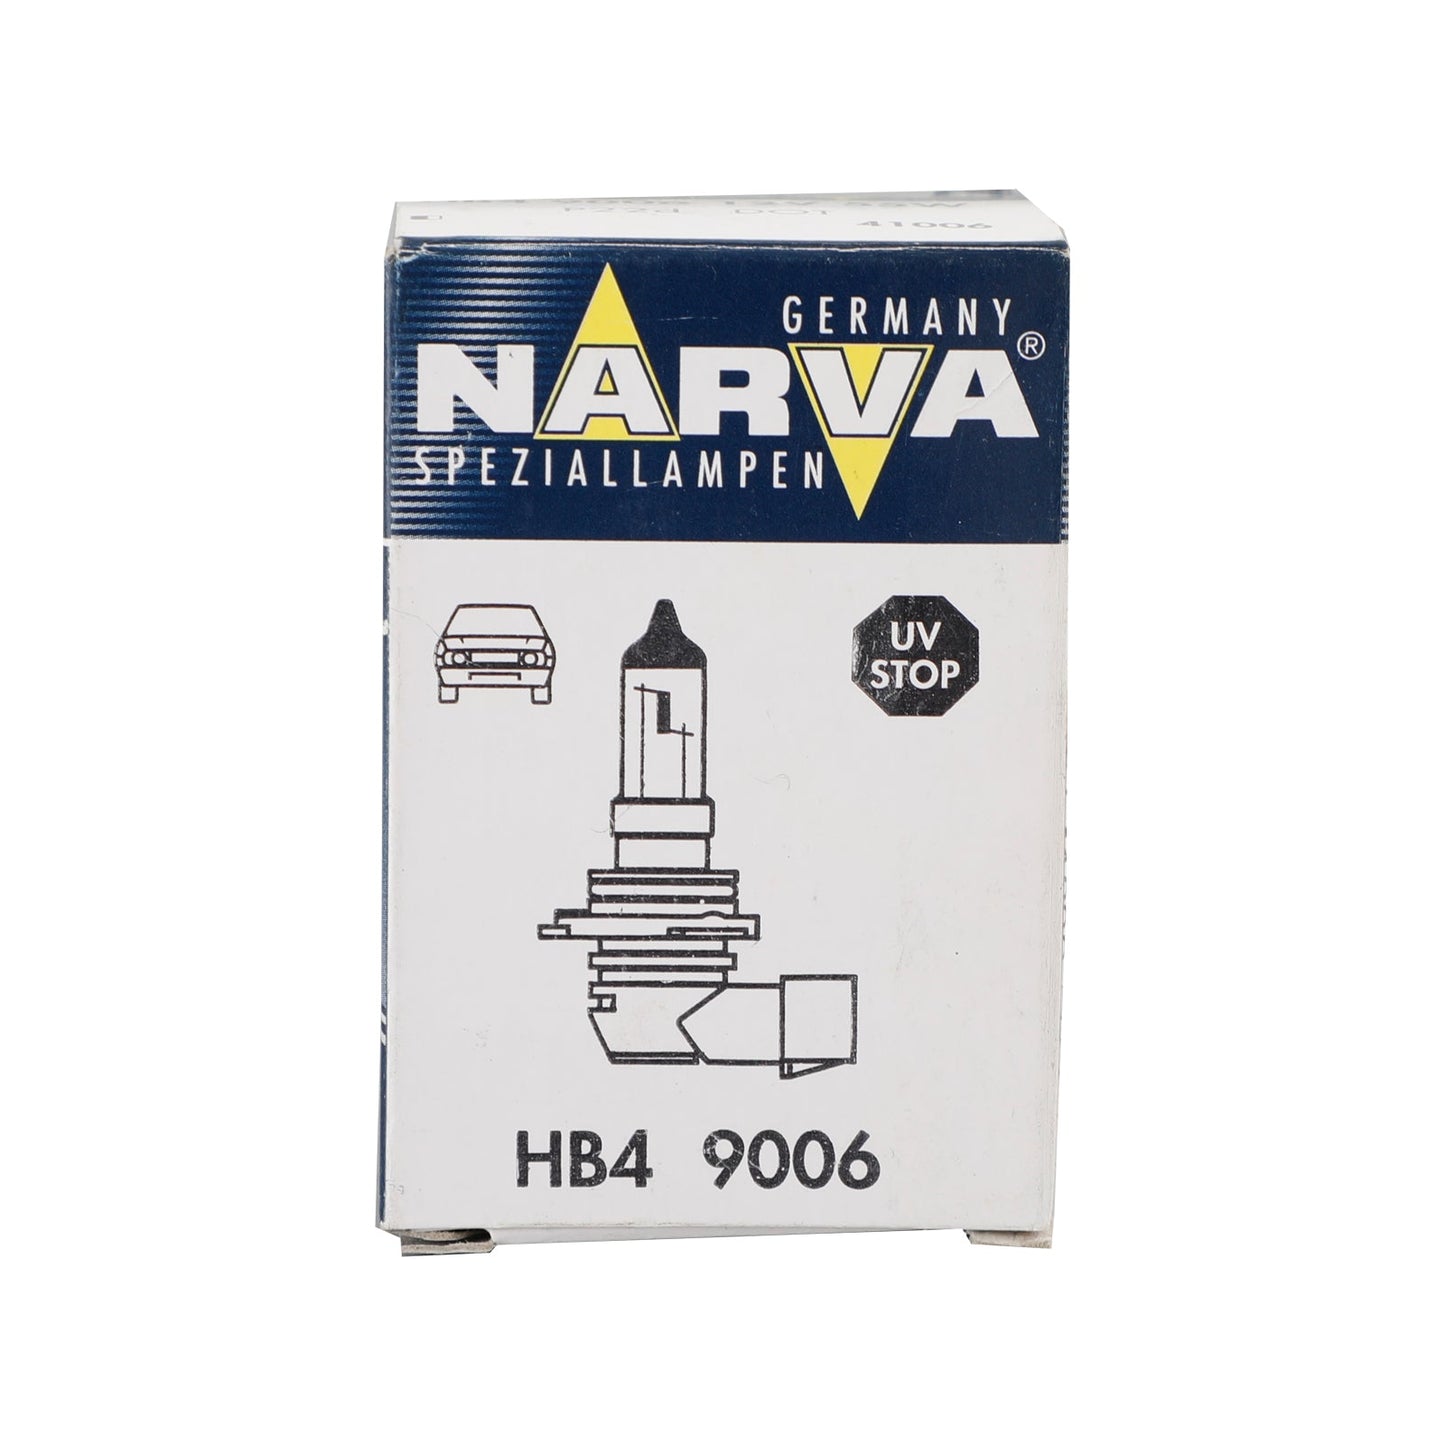 H3 RPW 91516 For NARVA Range Power White Car Headlight Lamp 12V55W PK22s